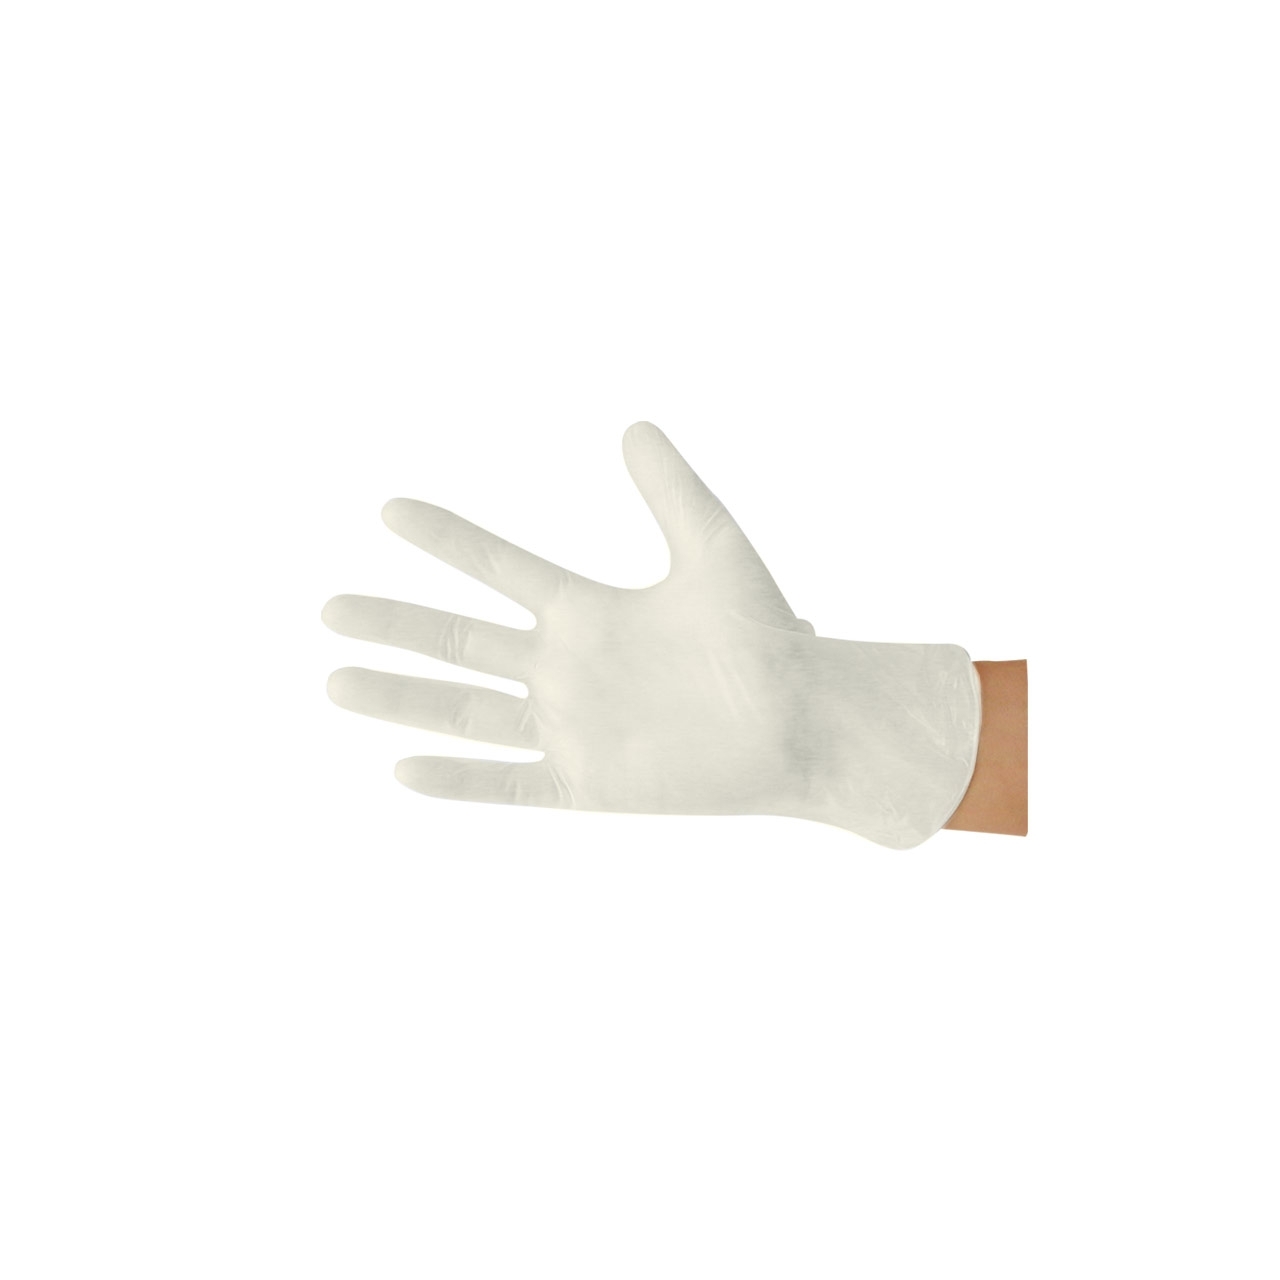 BAEHR Nitril-Einmalhandschuhe / Soft weiß / Größe XS, 100 Stück, latexfrei, puderfrei